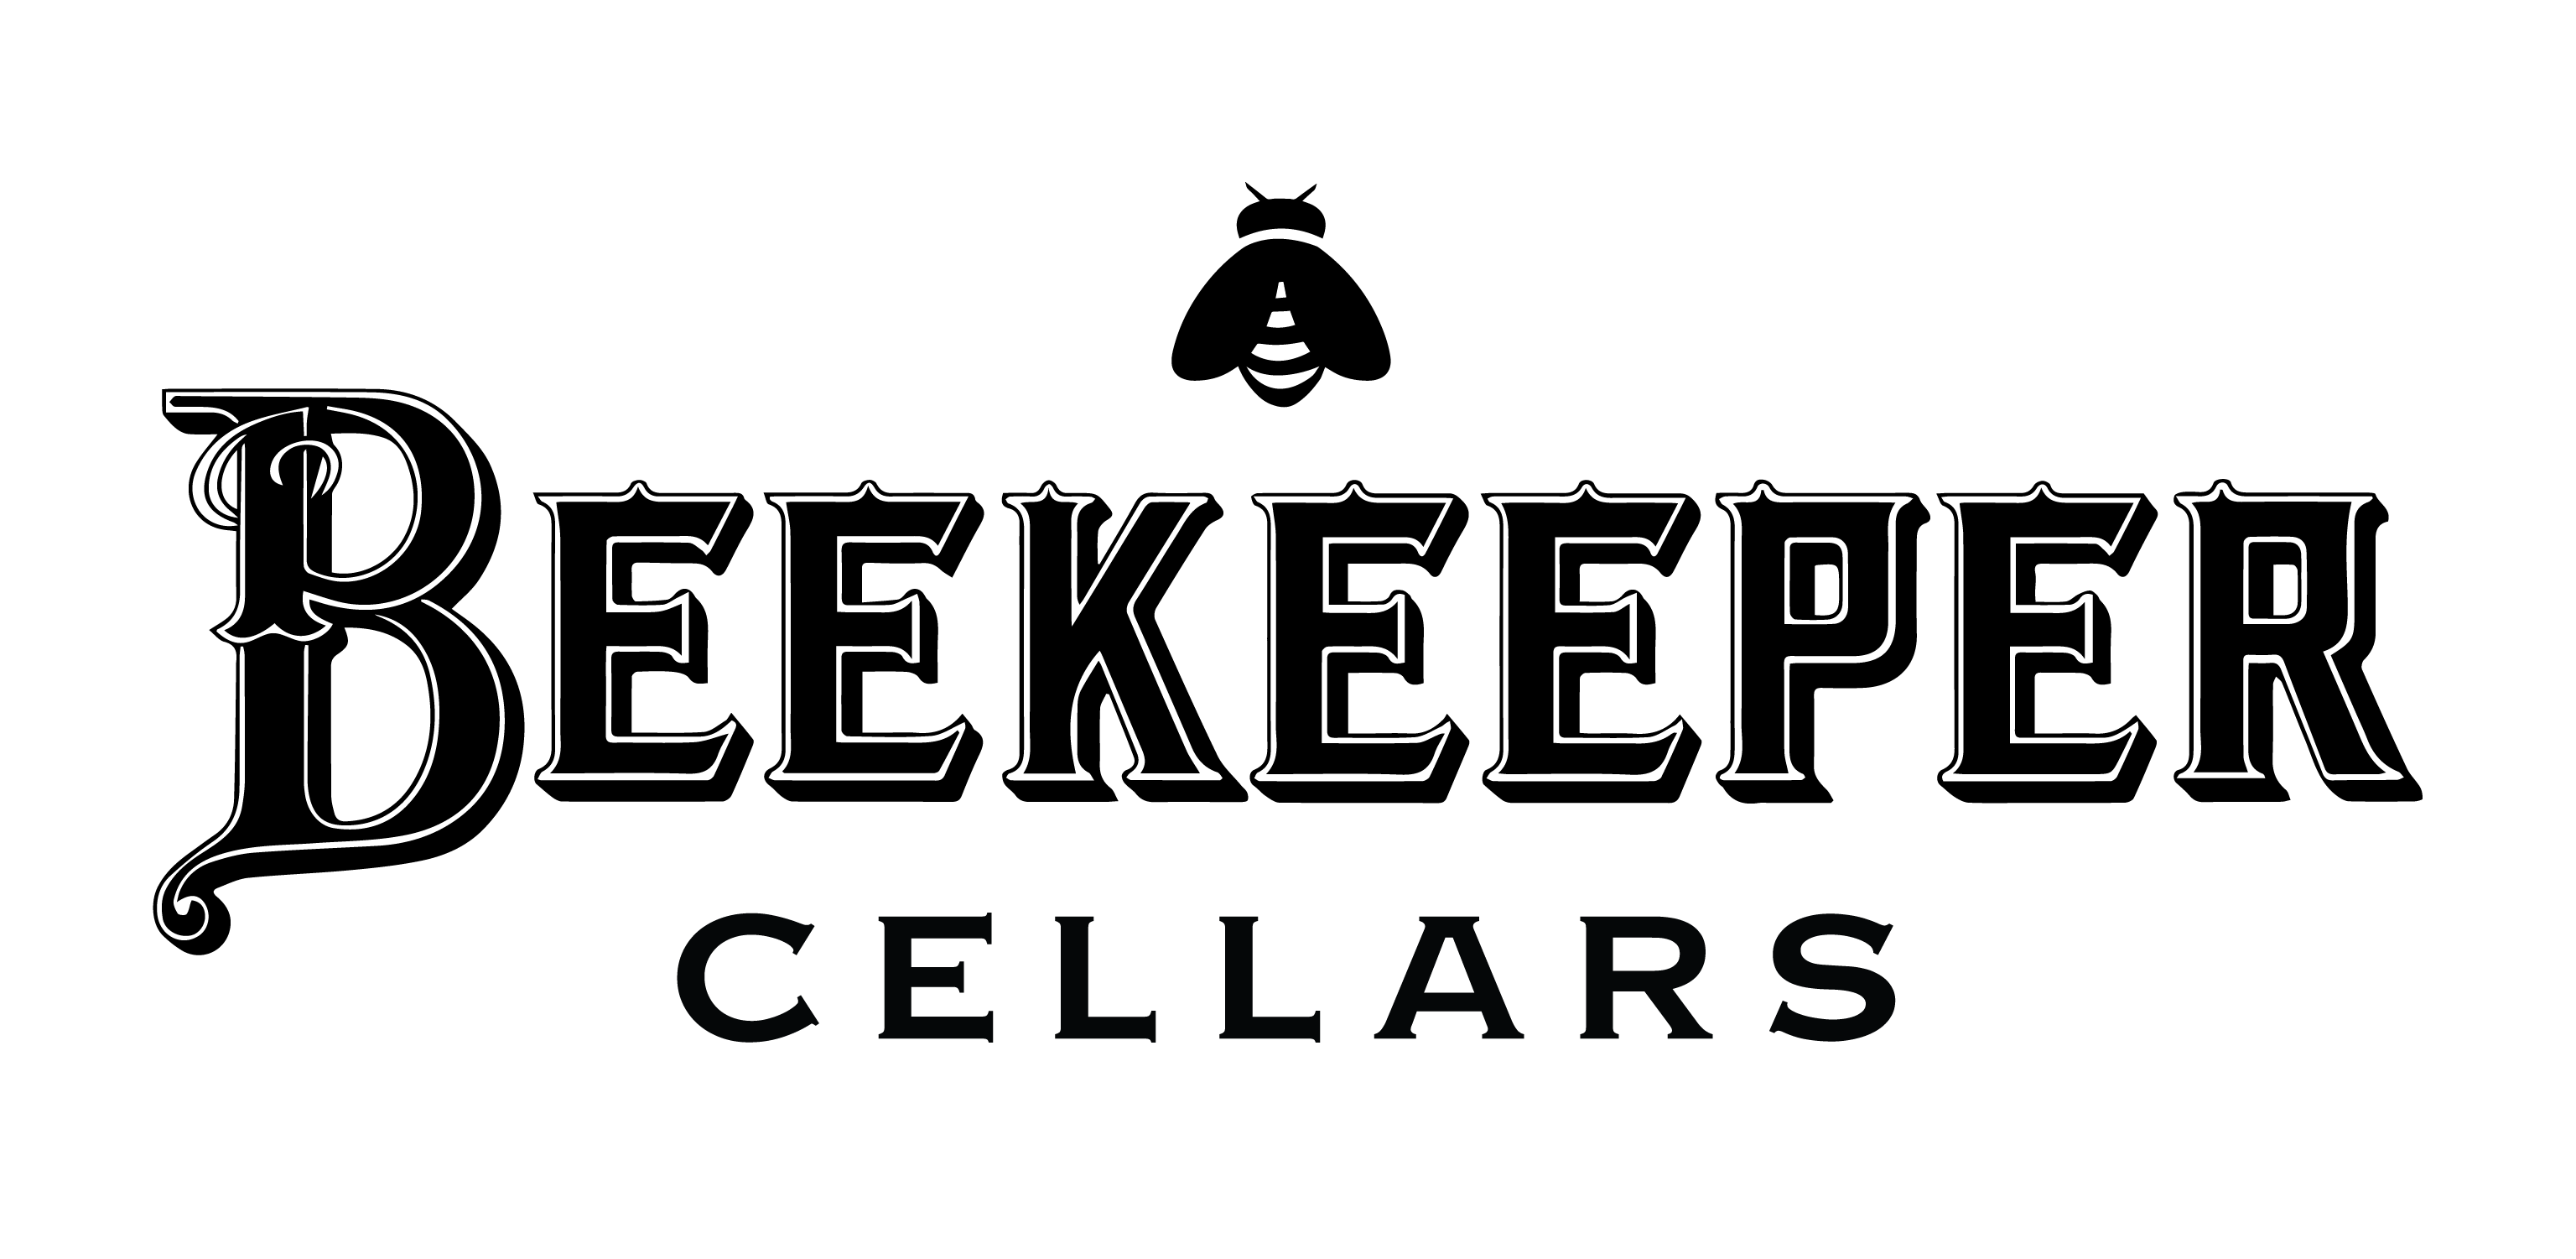 Beekeeper Cellars